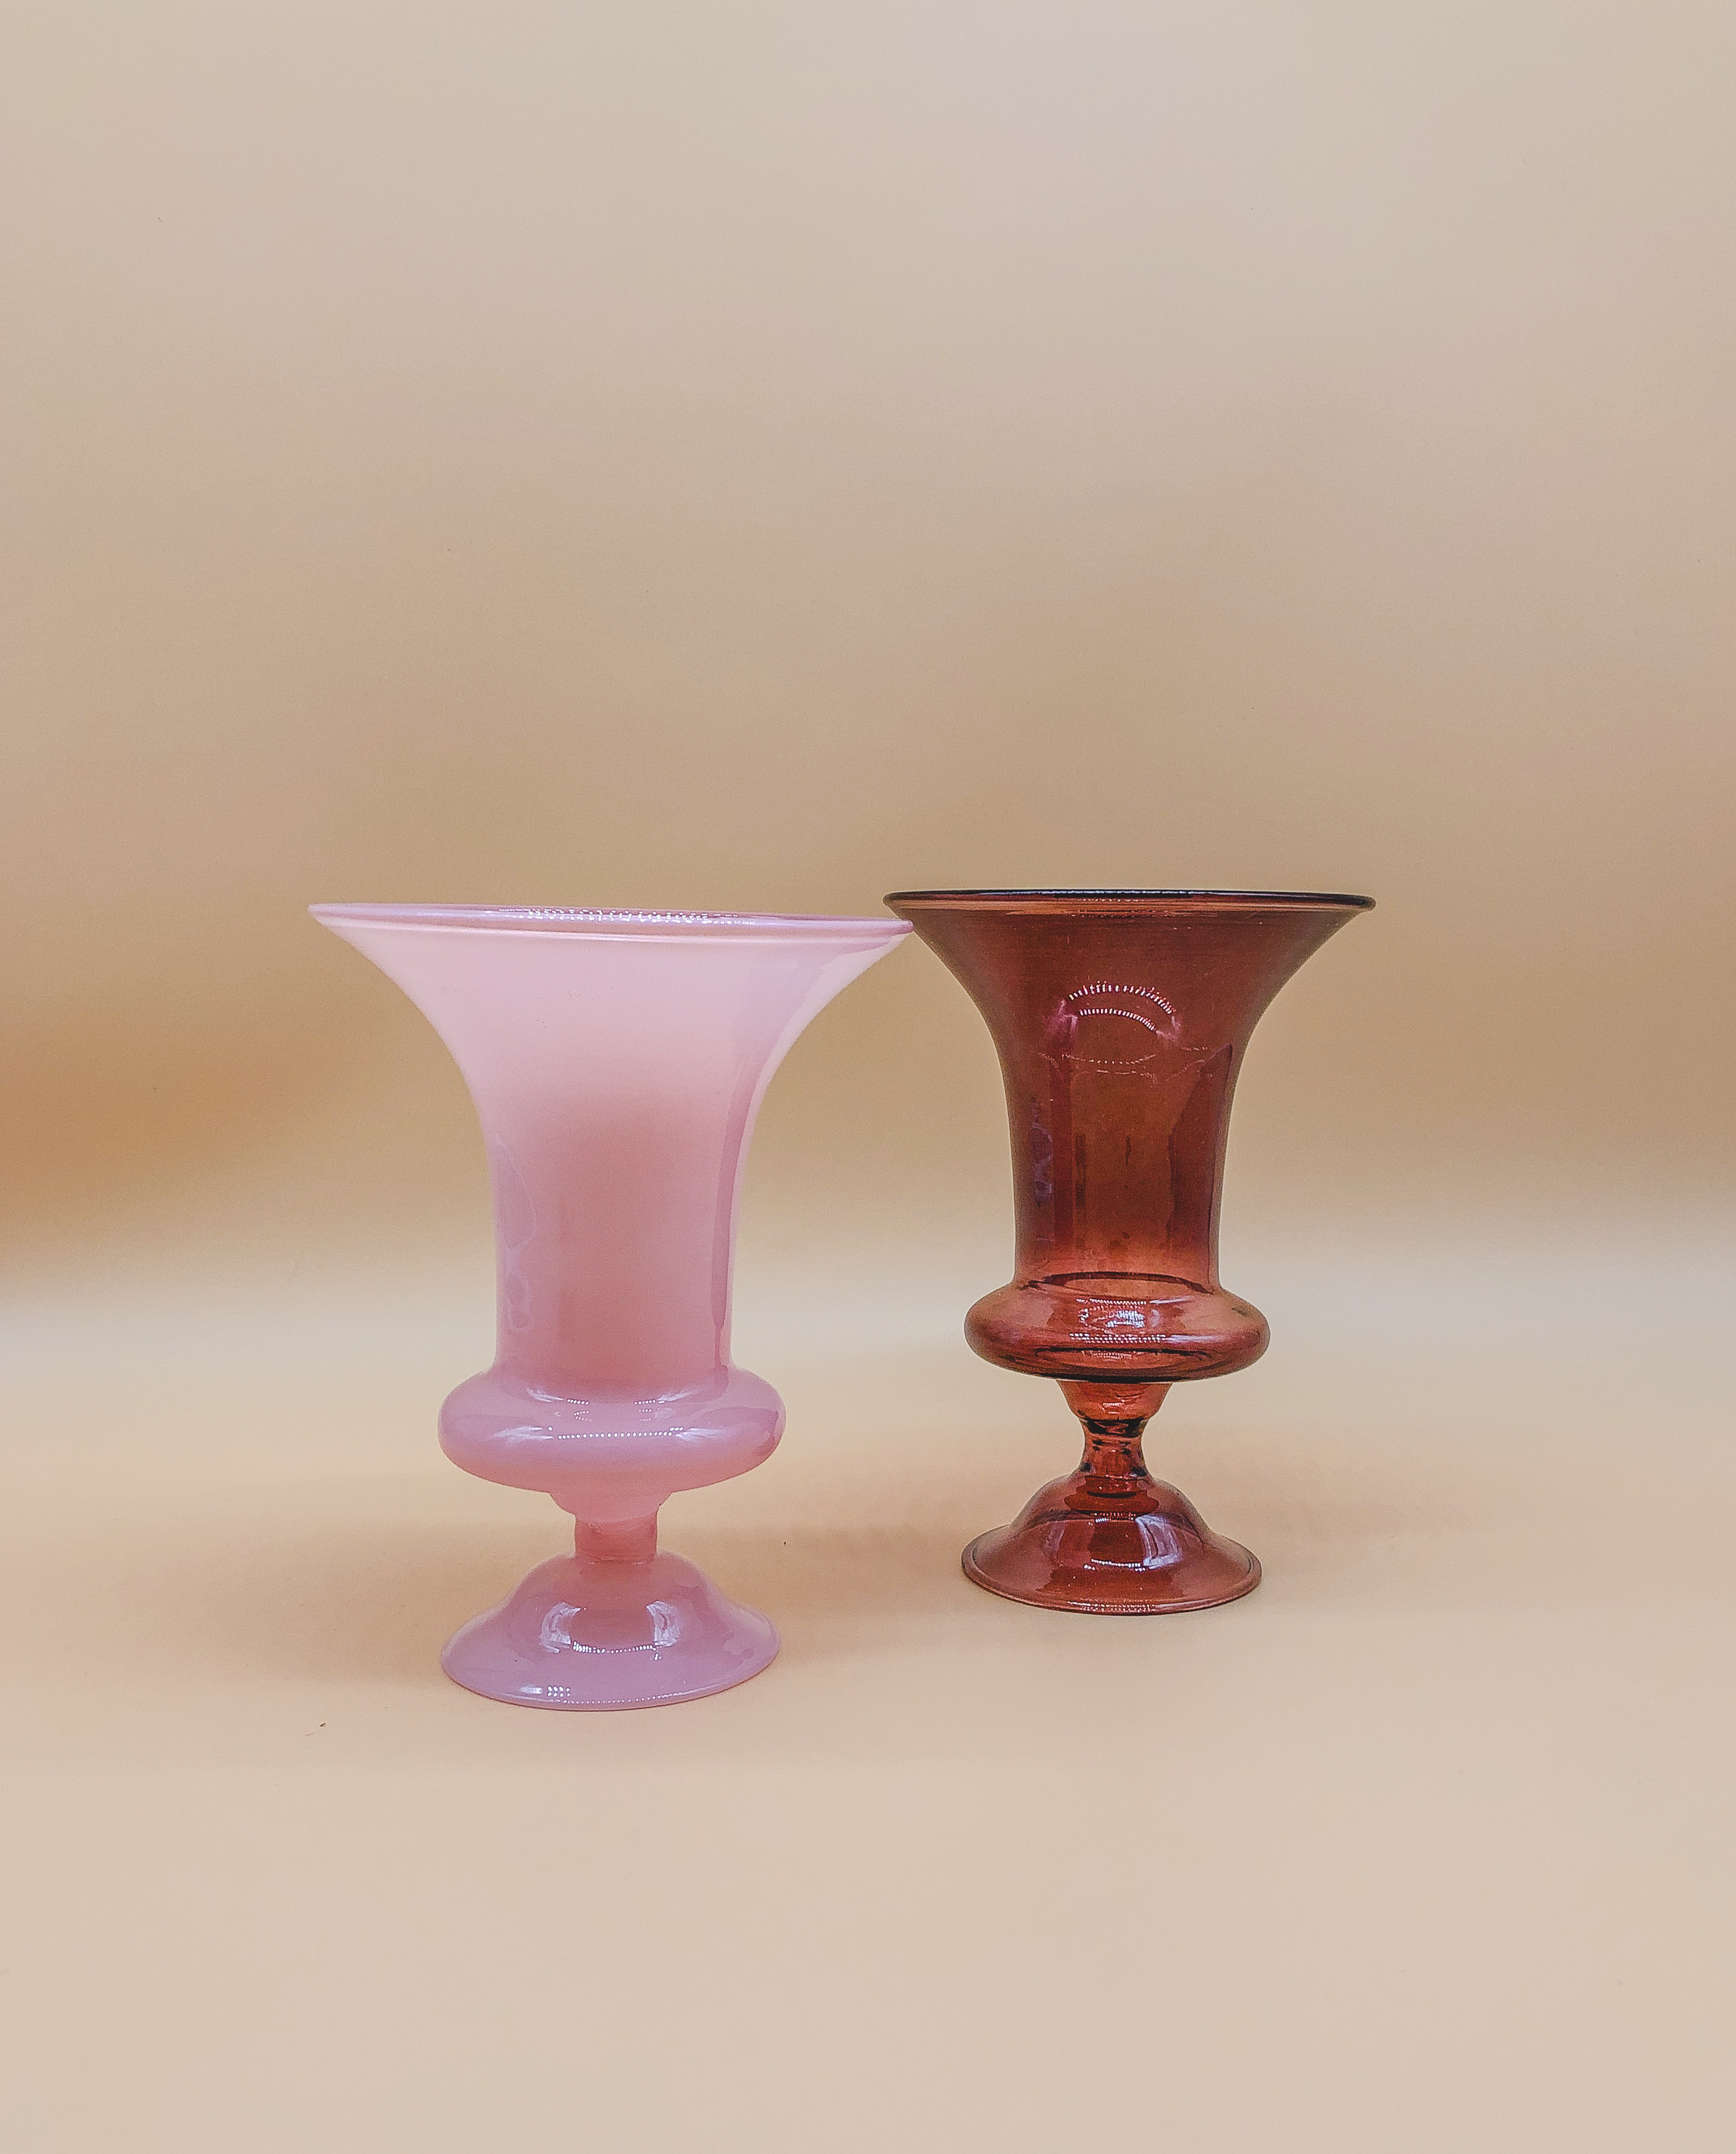 The Bandung Vase by PROSE Botanical